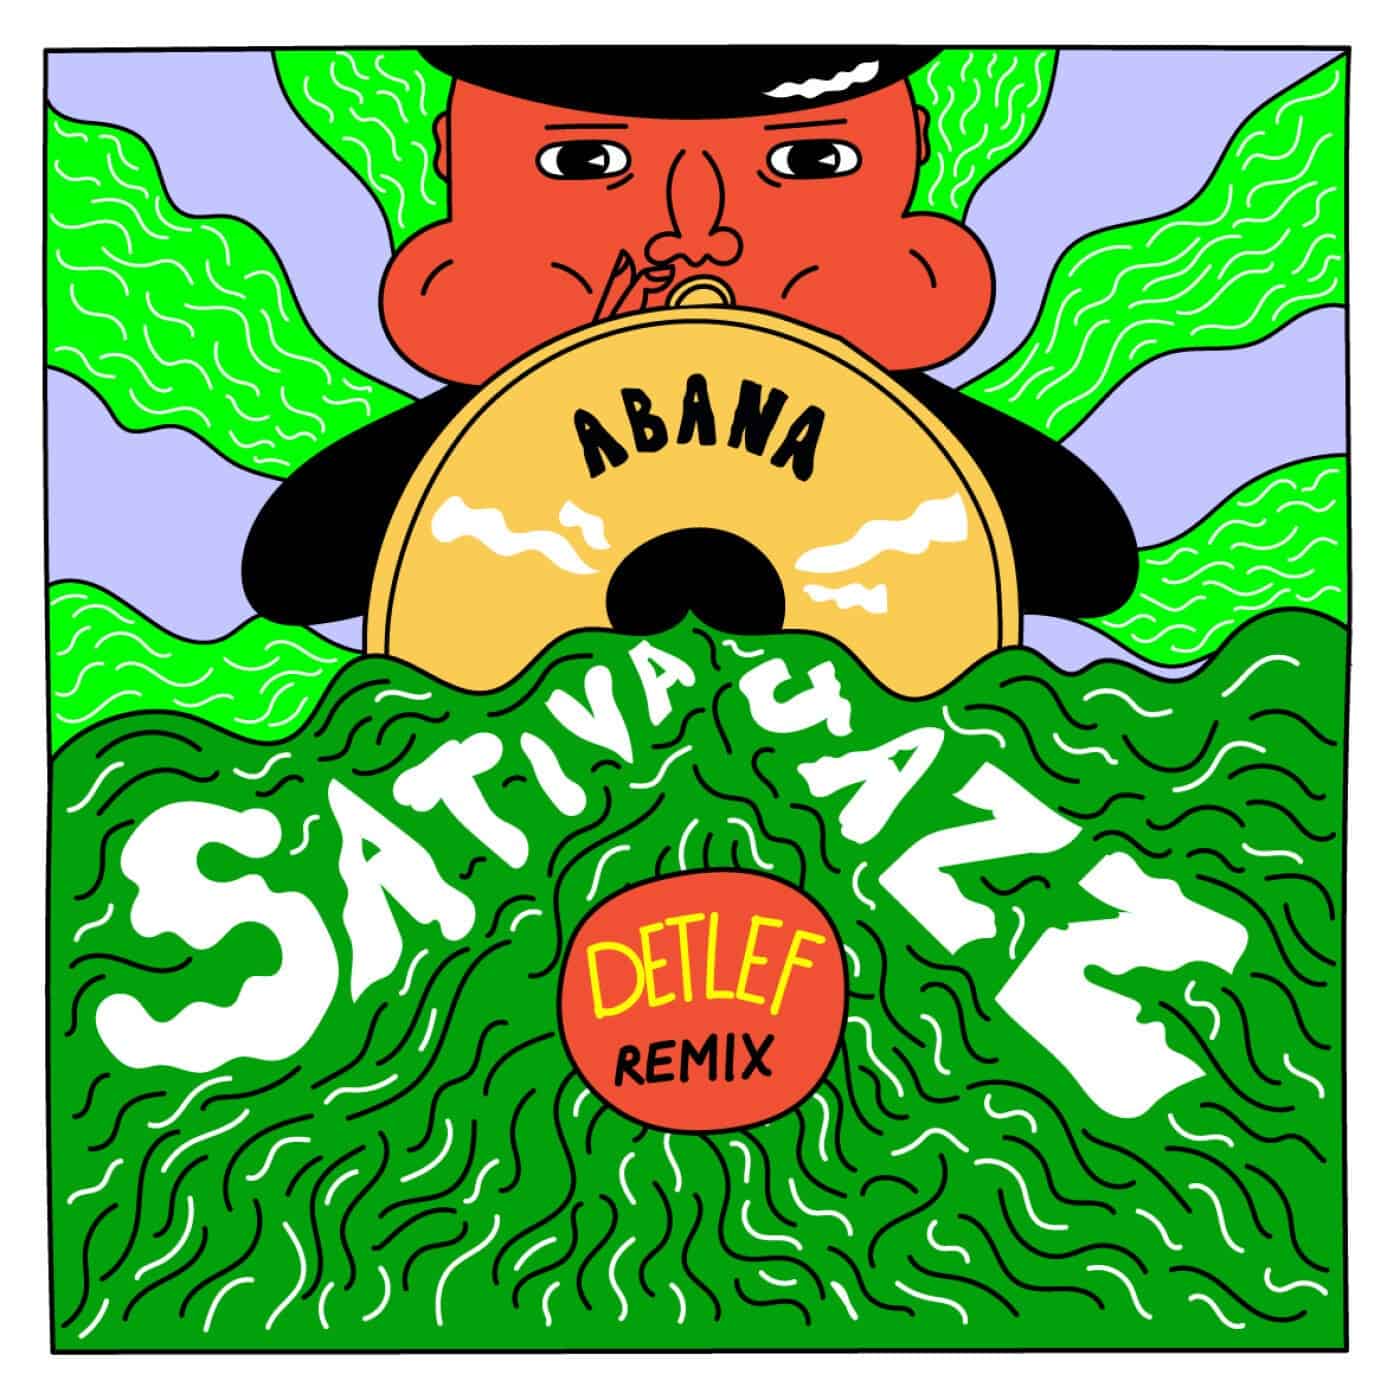 image cover: Abana - Sativa Jazz (Detlef Remix) / BAS004